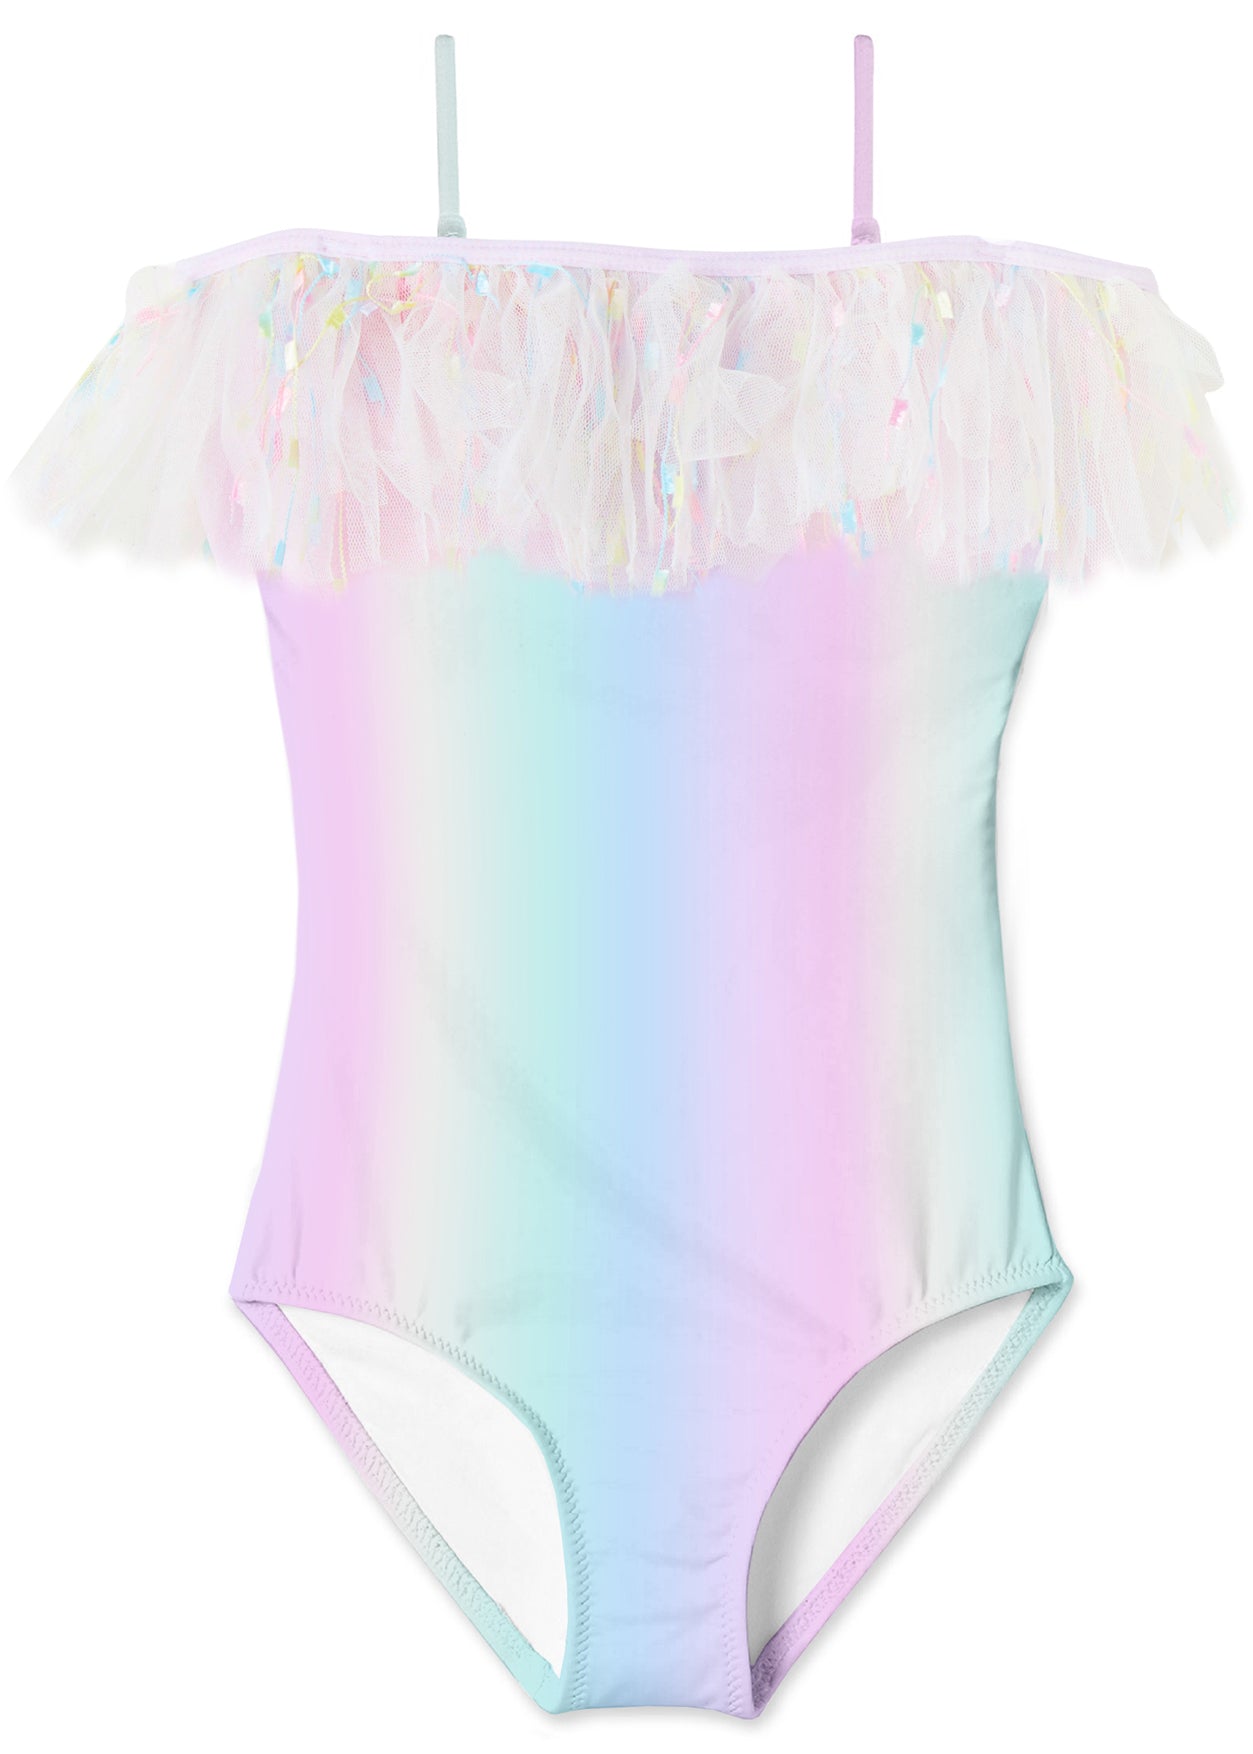 rainbow swimsuit for girls, rainbow swimwear for girls, rainbow bathing costume for girls